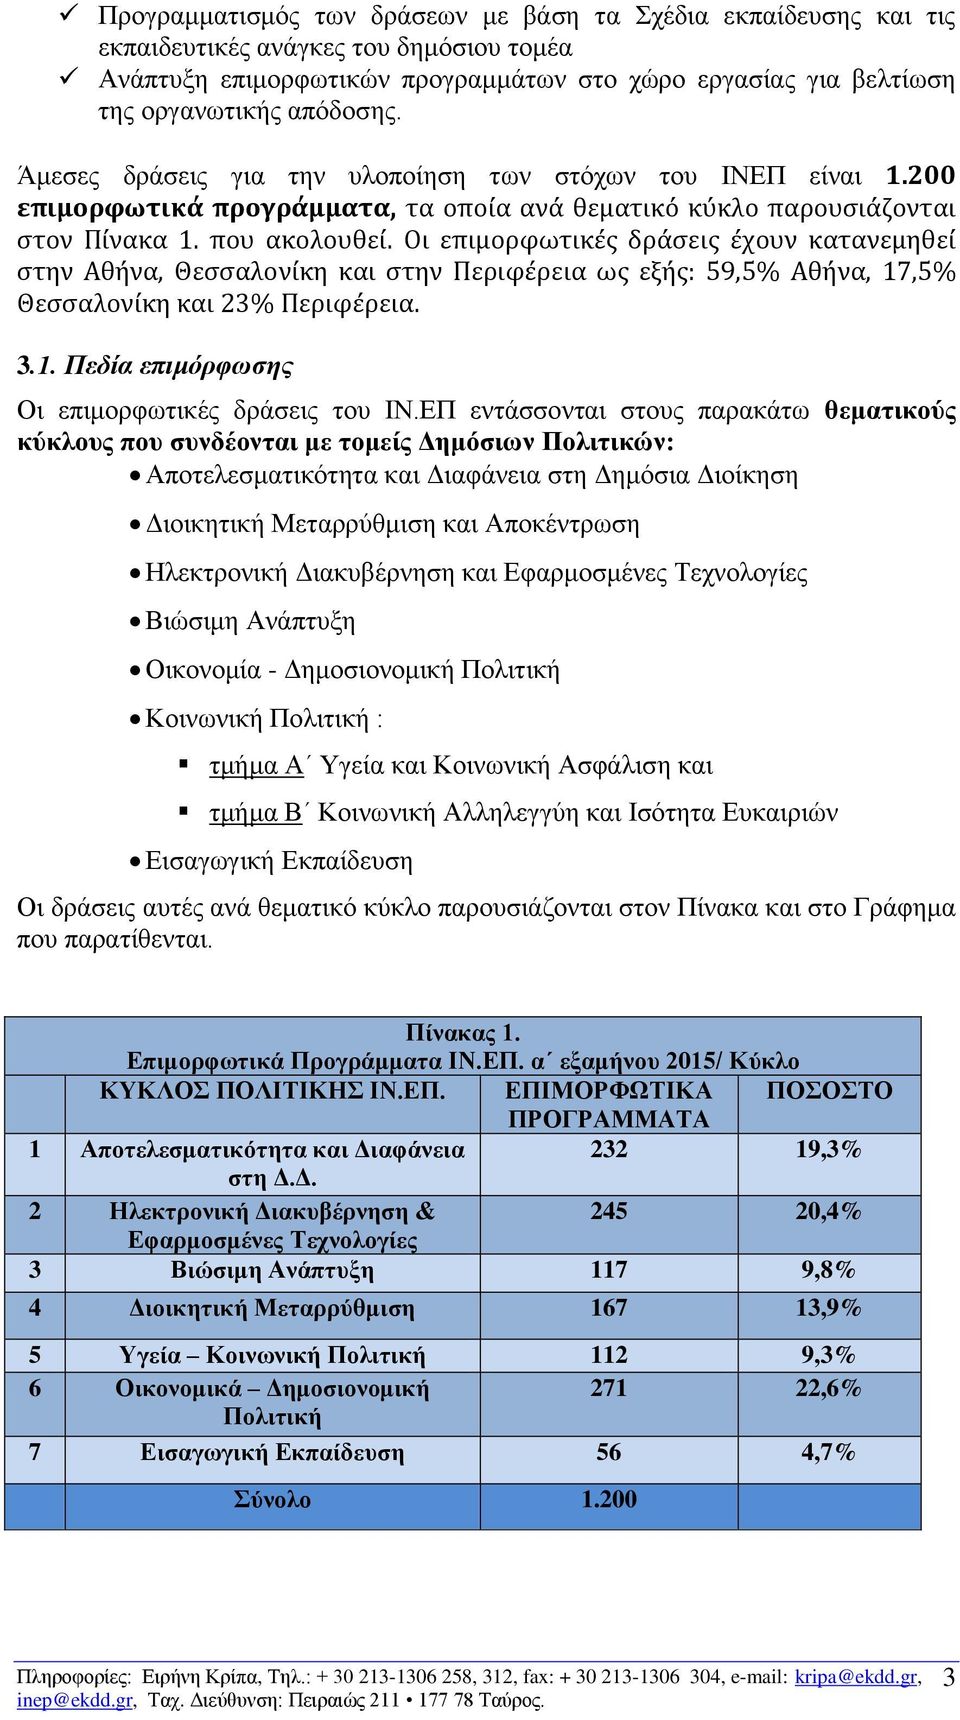 Οι επιμορφωτικές δράσεις έχουν κατανεμηθεί στην Αθήνα, Θεσσαλονίκη και στην Περιφέρεια ως εξής: 59,5% Αθήνα, 17,5% Θεσσαλονίκη και 23% Περιφέρεια. 3.1. Πεδία επιμόρφωσης Οι επιμορφωτικές δράσεις του ΙΝ.